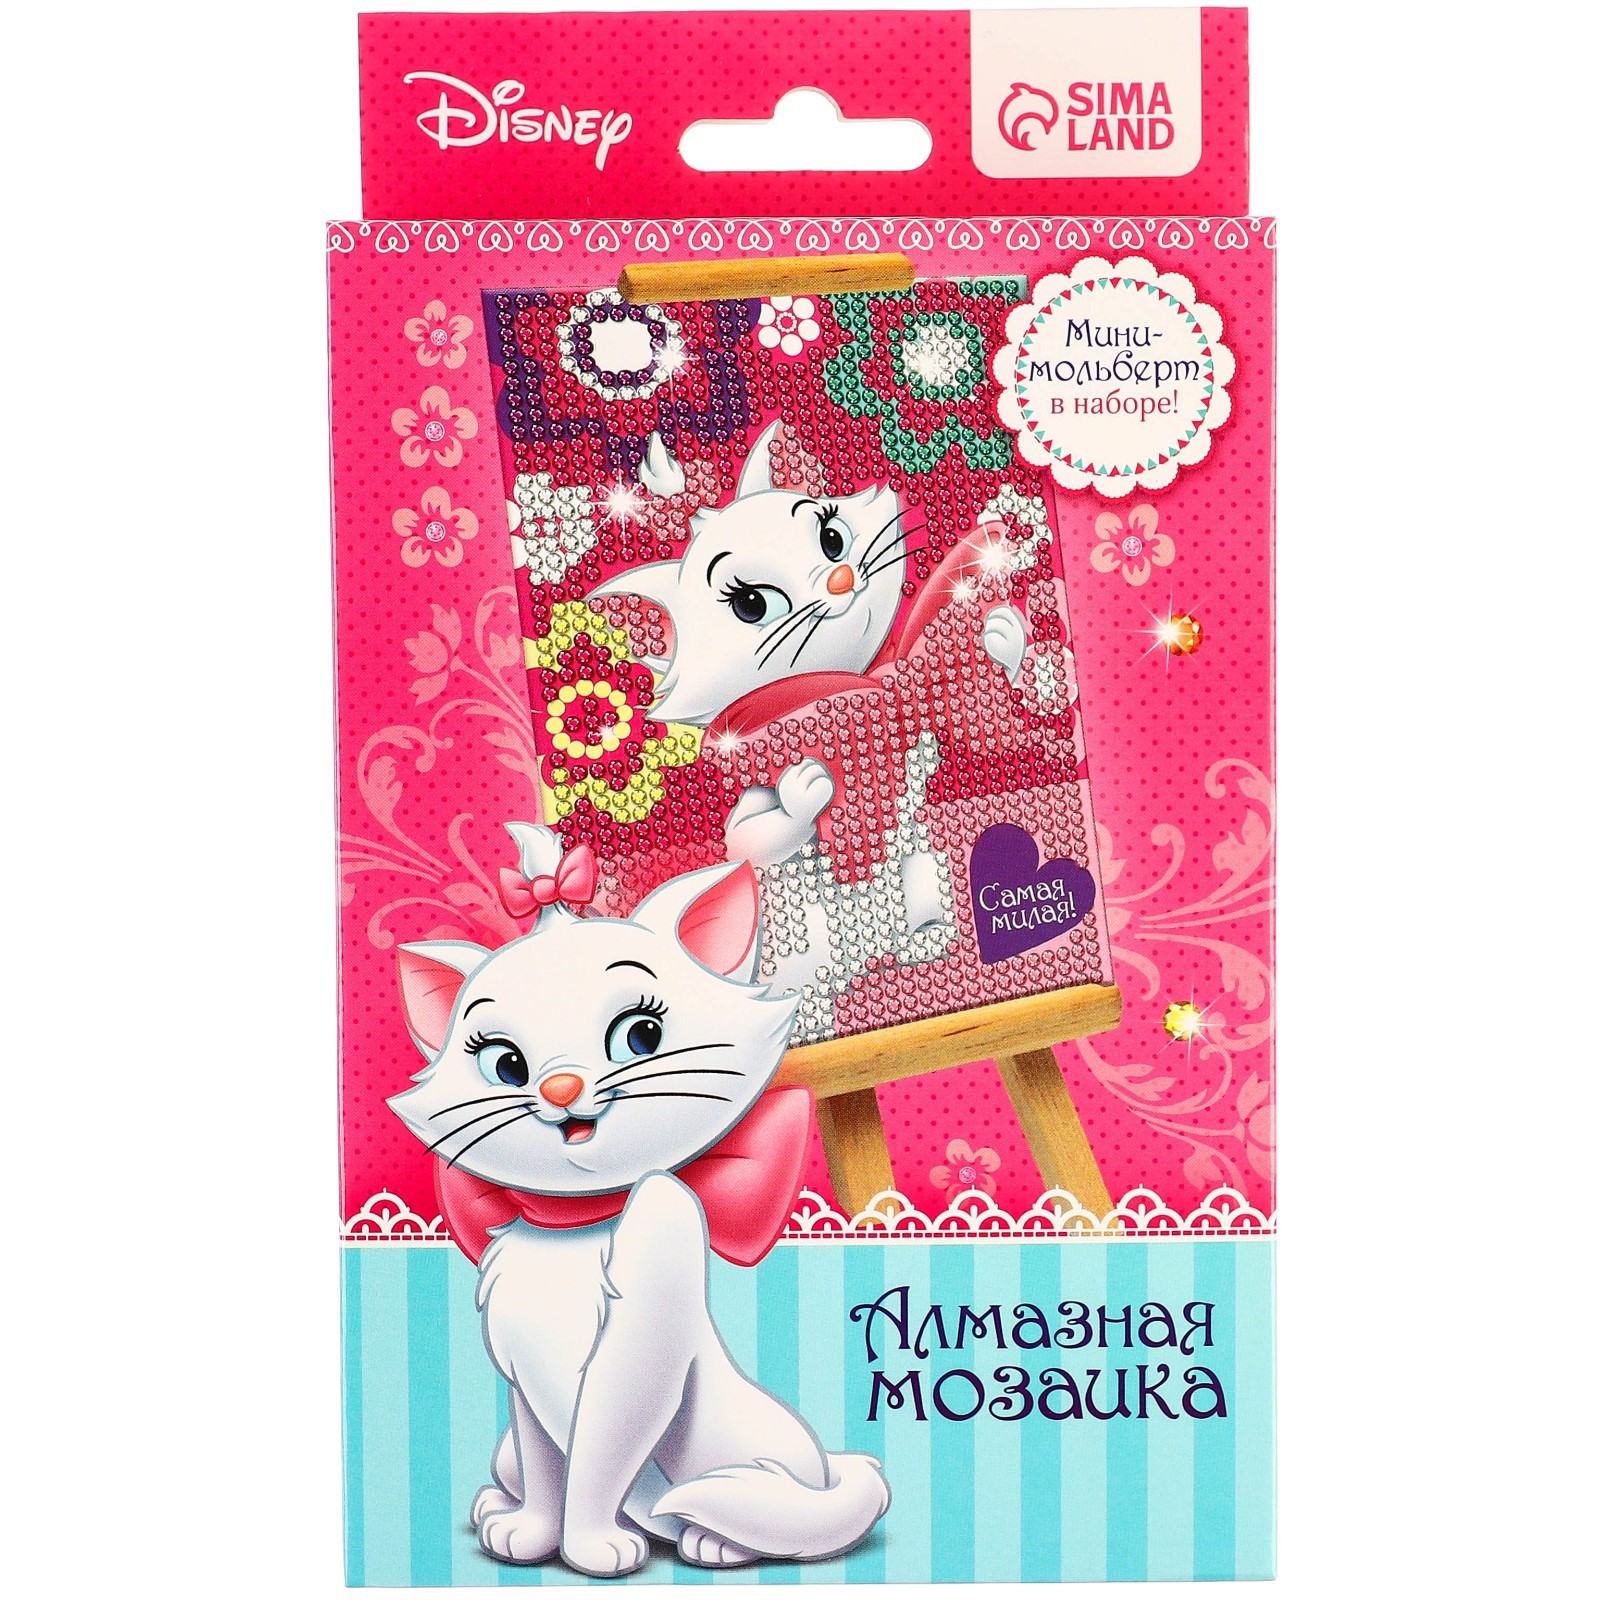 Алмазная вышивка Disney для детей Самая милая!, Коты аристократы (2873971) самая первая книга знаний малыша для детей от 1 года до 3 лет